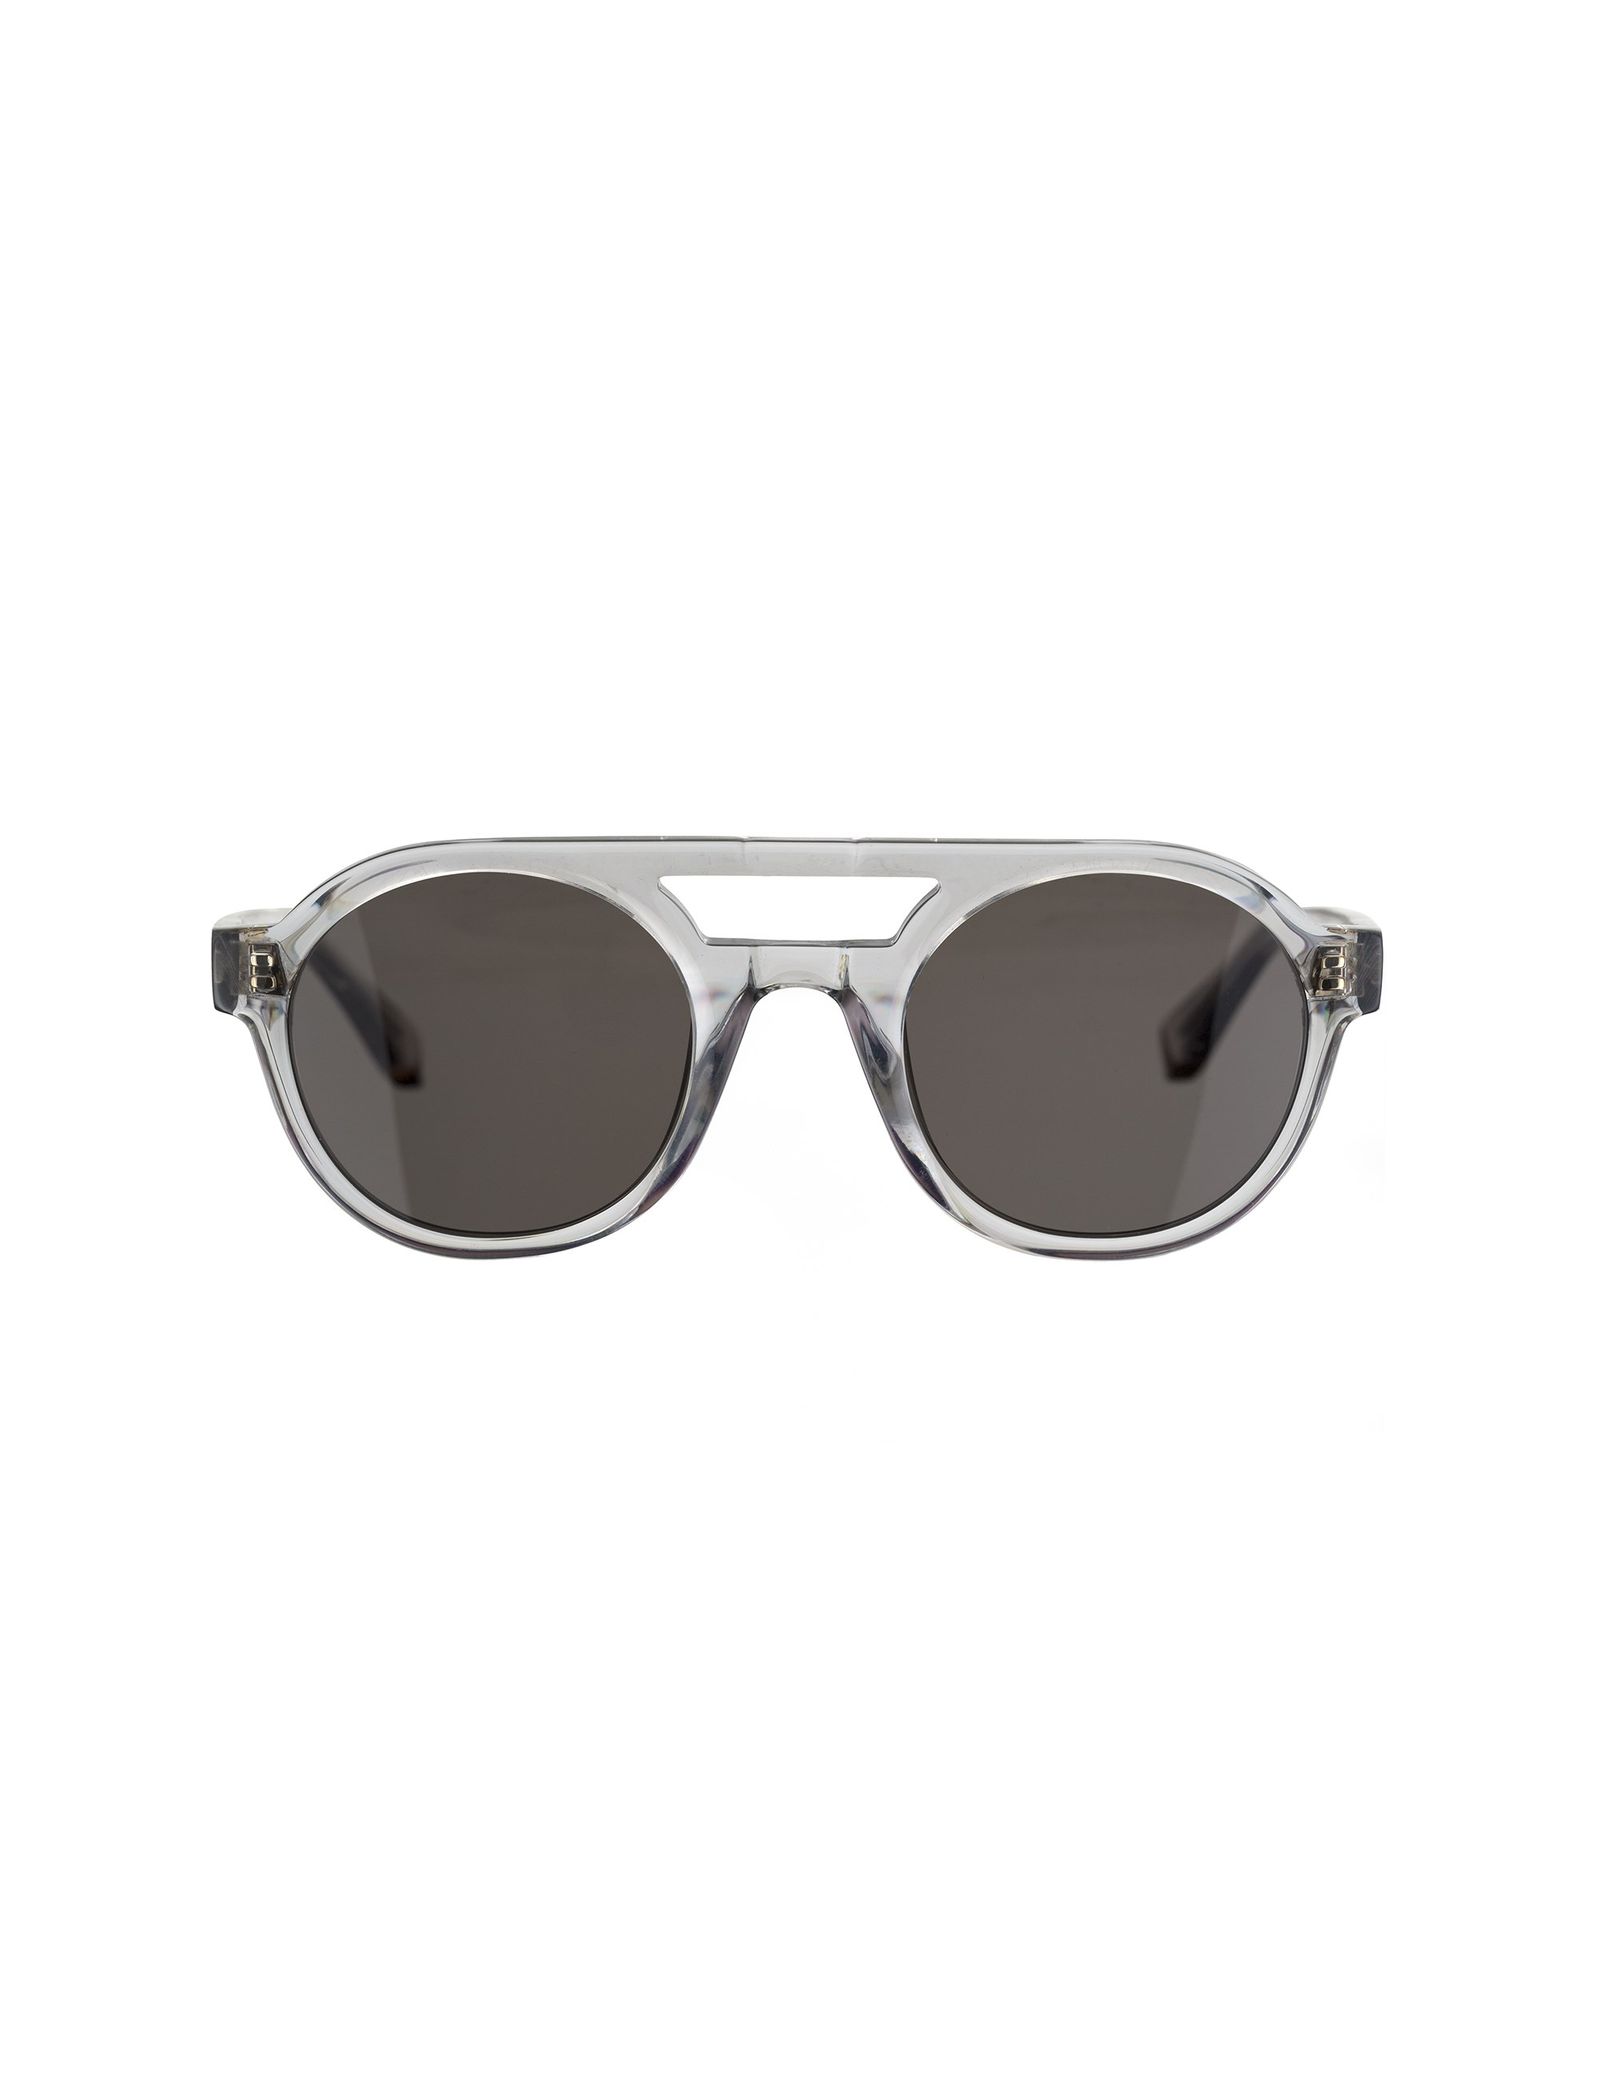 عینک آفتابی خلبانی مردانه - ساندرو - طوسي   - 1